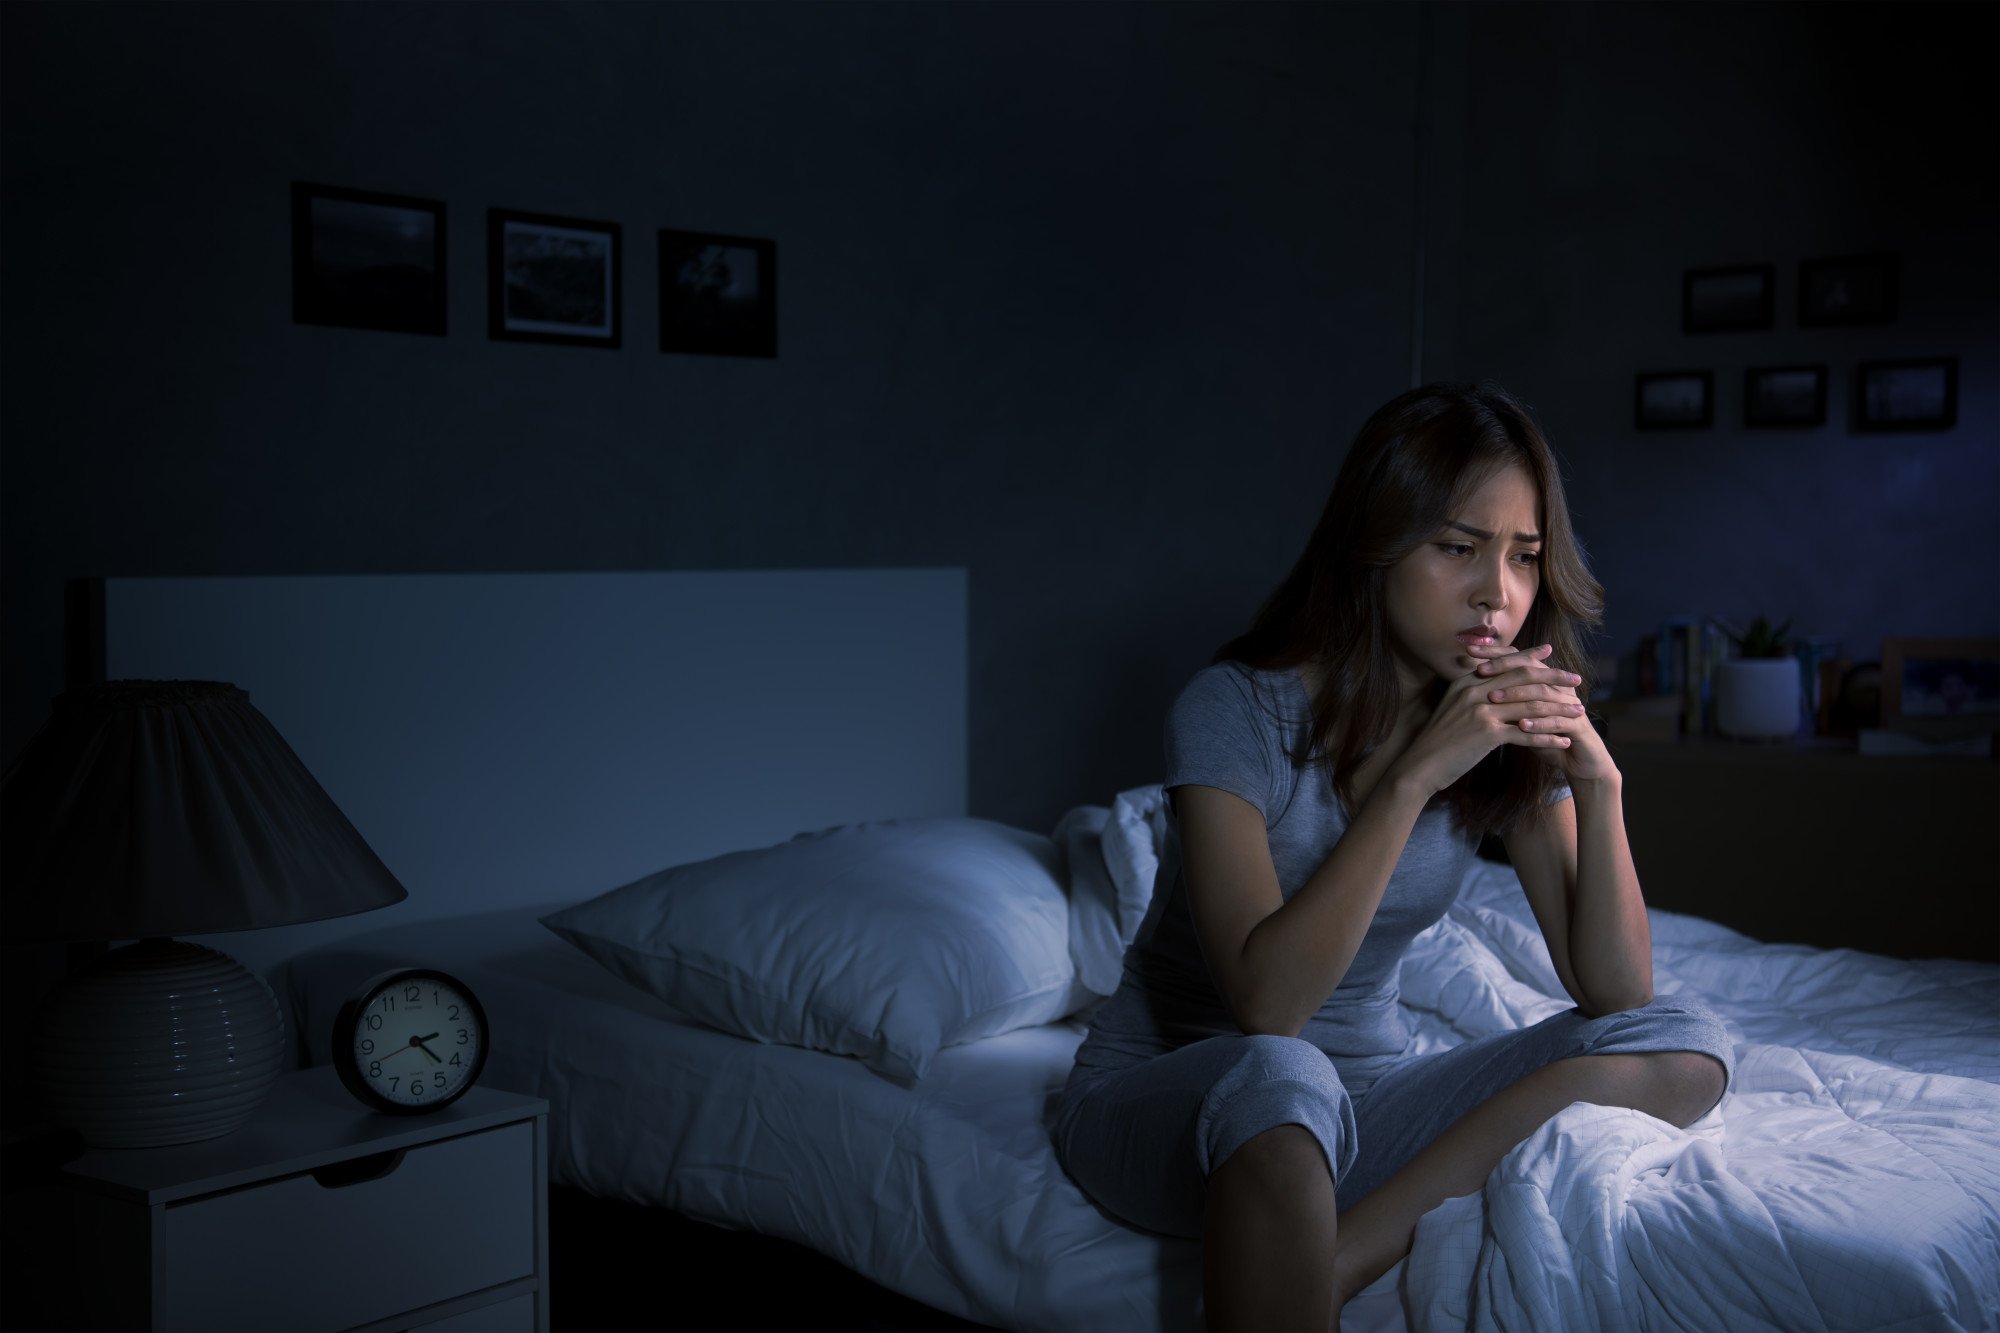 Rối loạn giấc ngủ làm tăng nguy cơ sa sút trí tuệ, cộng với thói quen vận động thế này dễ dẫn đến tổn thọ - Ảnh 3.